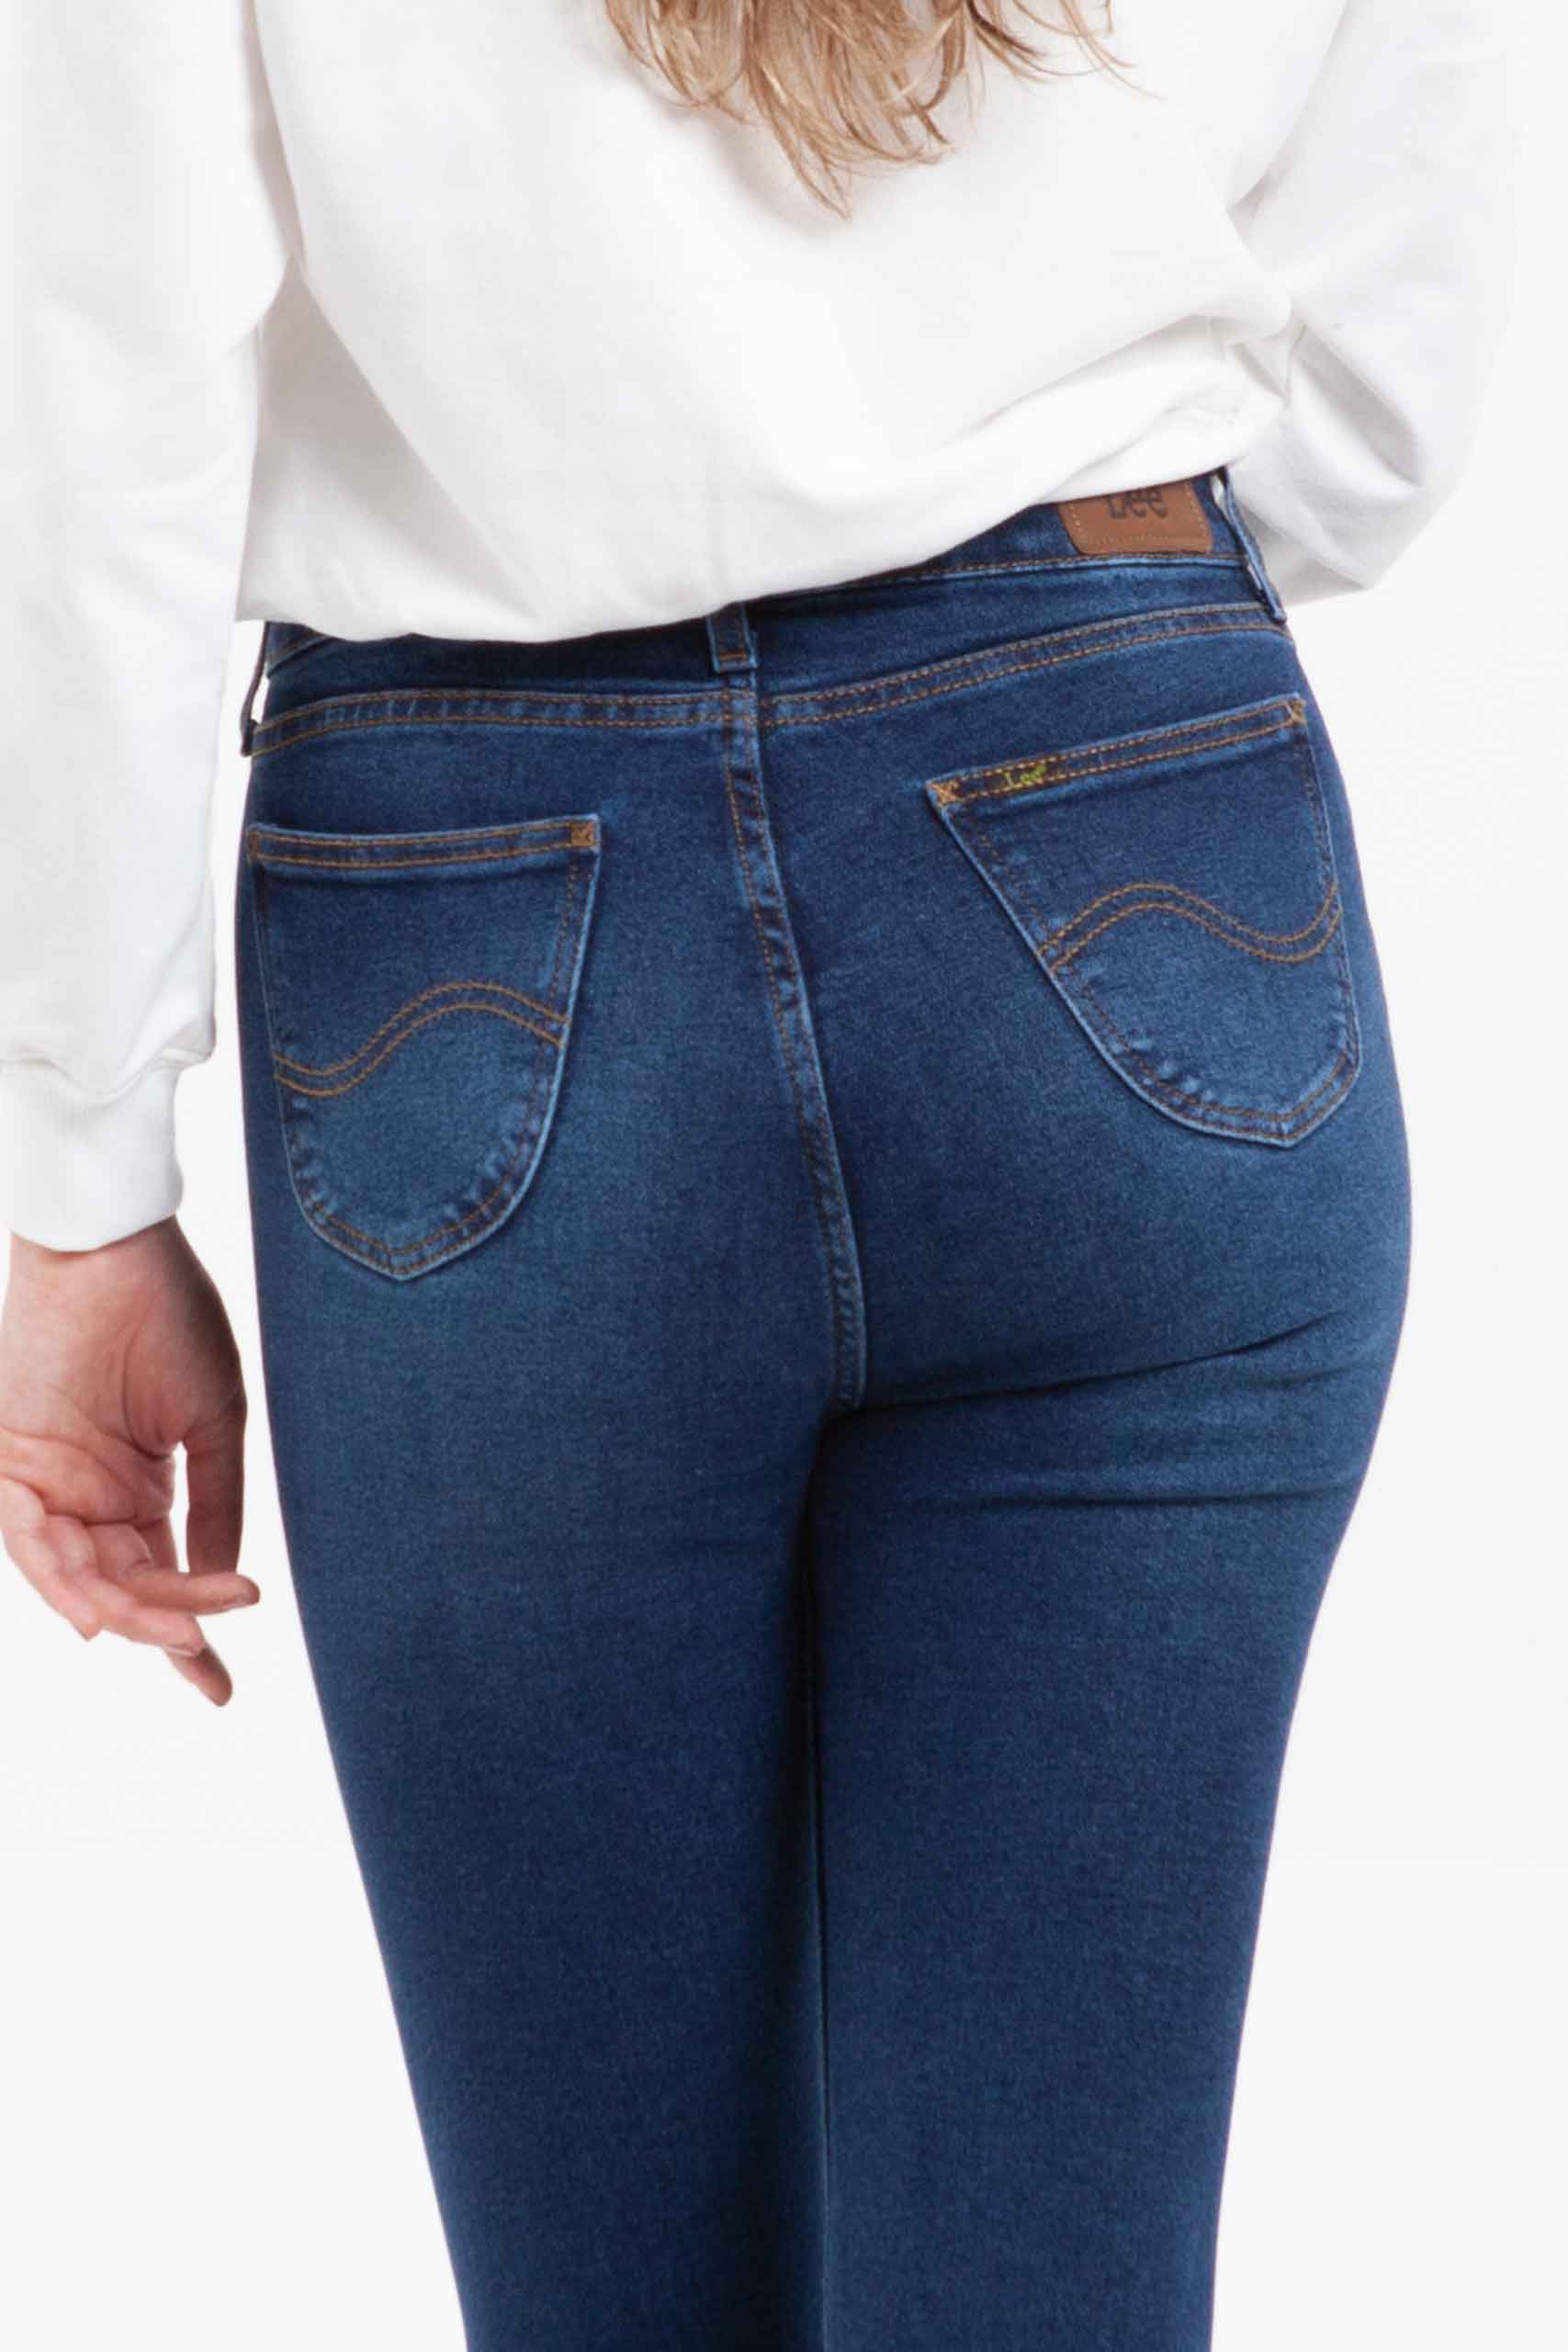 Vista posterior con dos bolsillos de jean de color azul de marca lee